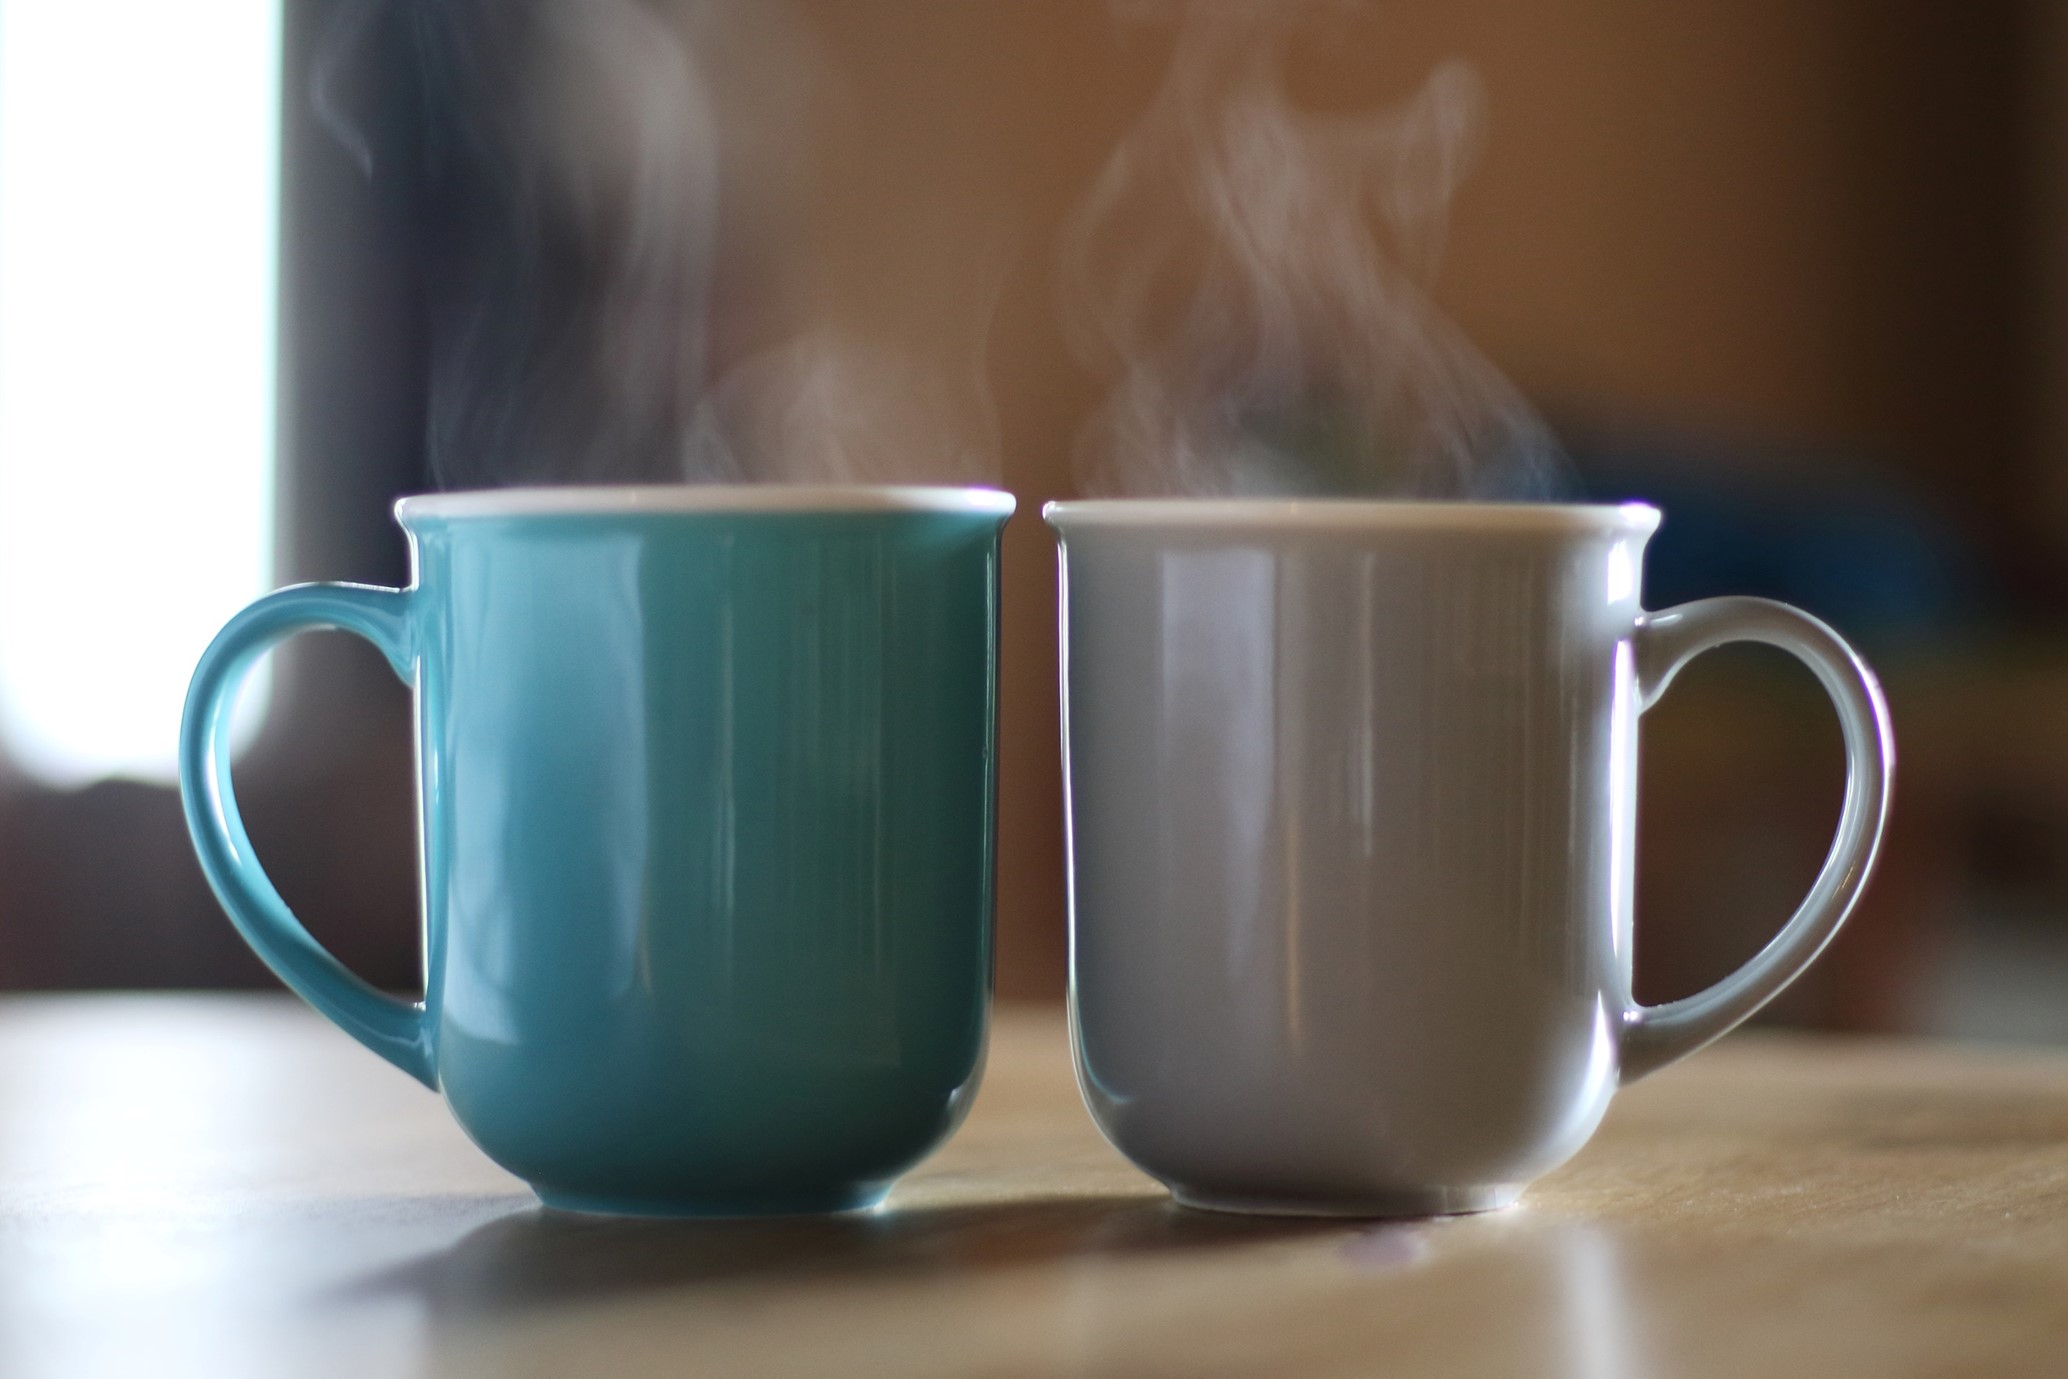 2 Coffee mugs